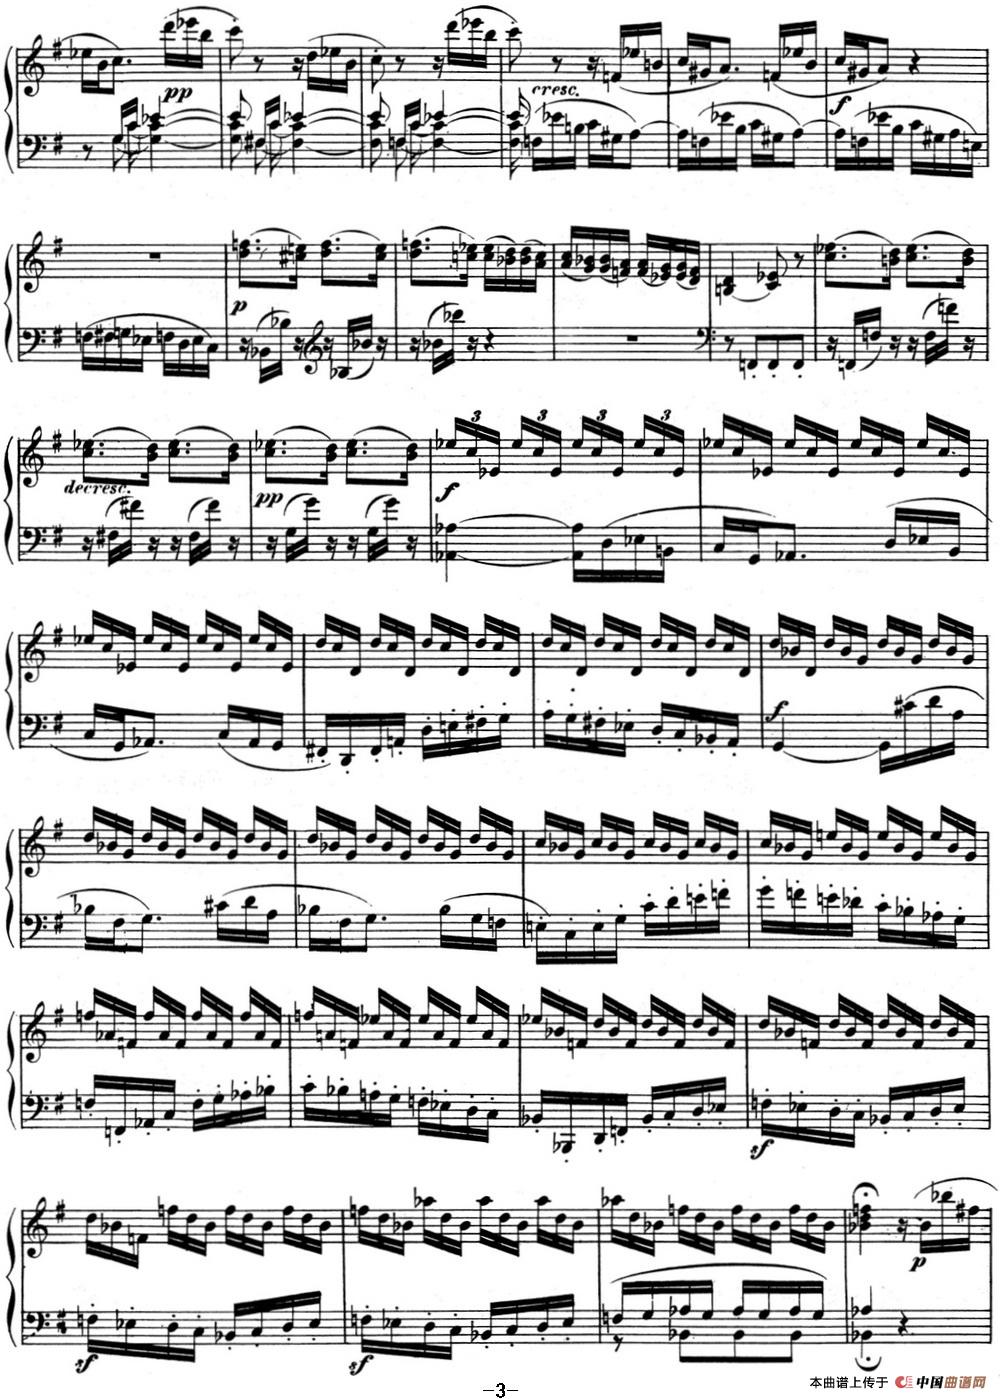 [钢琴谱] 贝多芬钢琴奏鸣曲10 g大调 op14 no2 g major